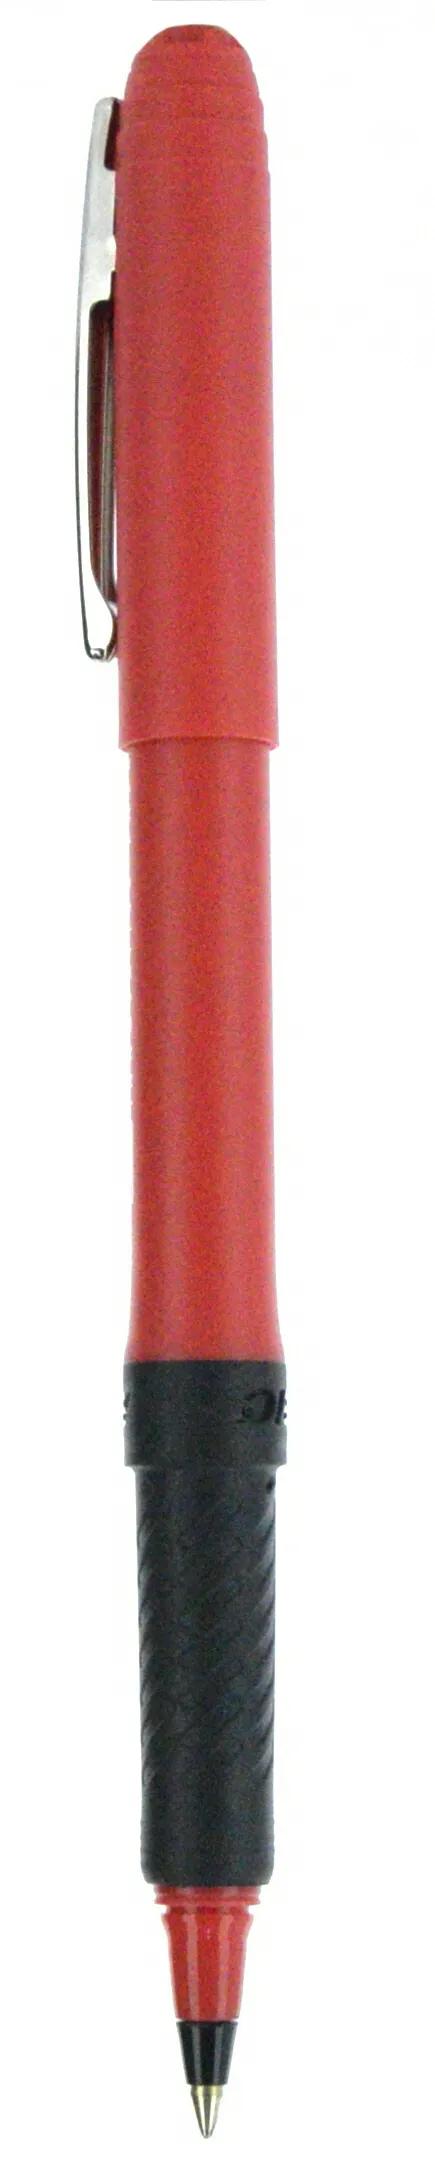 BIC® Grip Roller Pen 84 of 147